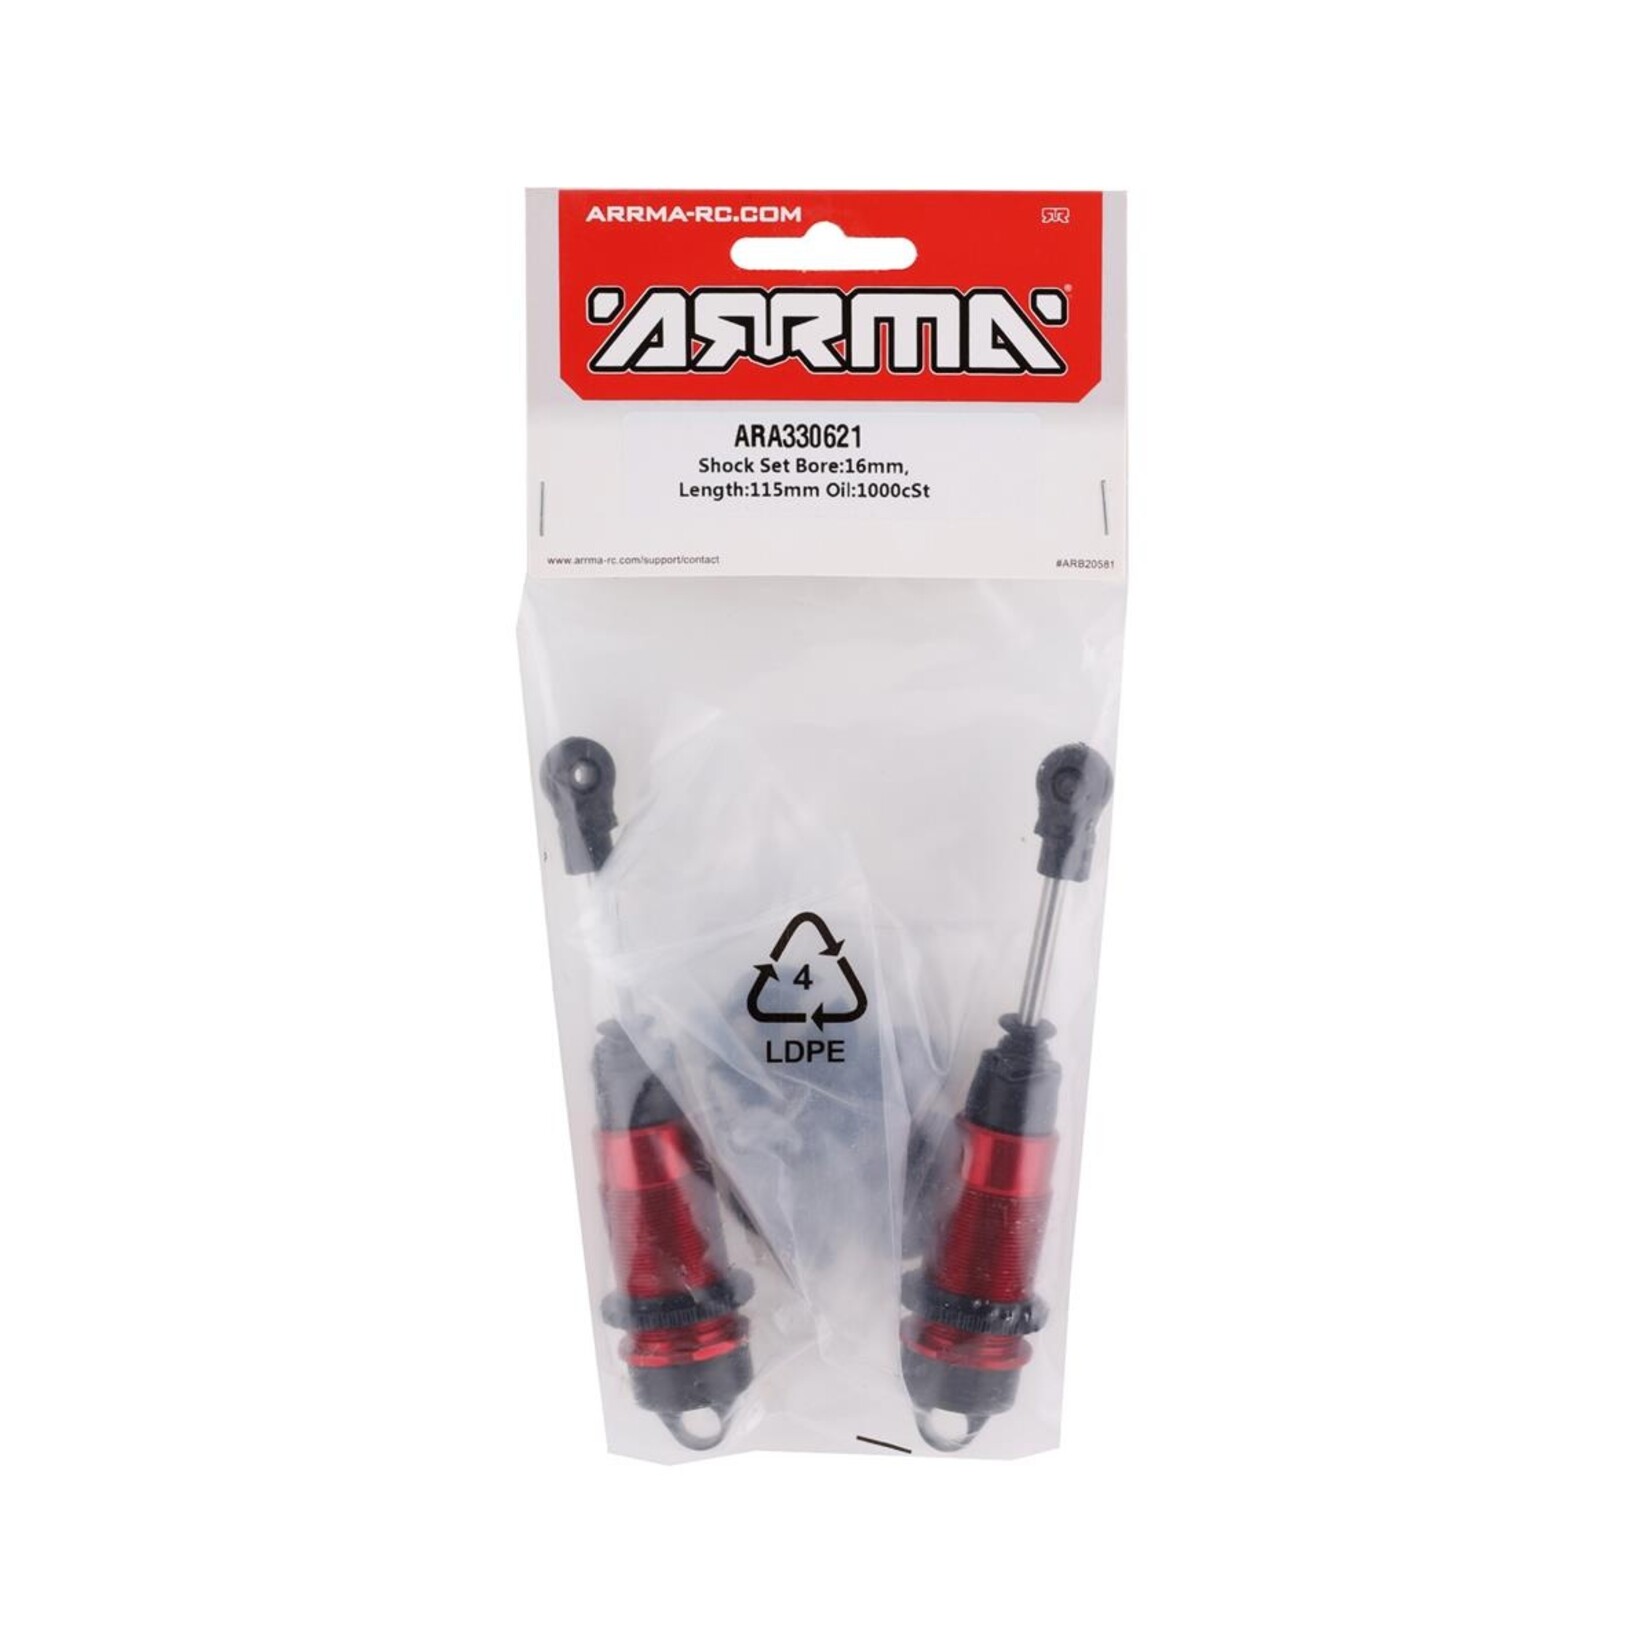 ARRMA Arrma 115mm Pre-Assembled Front Shock Set (Red) (2) #ARA330621